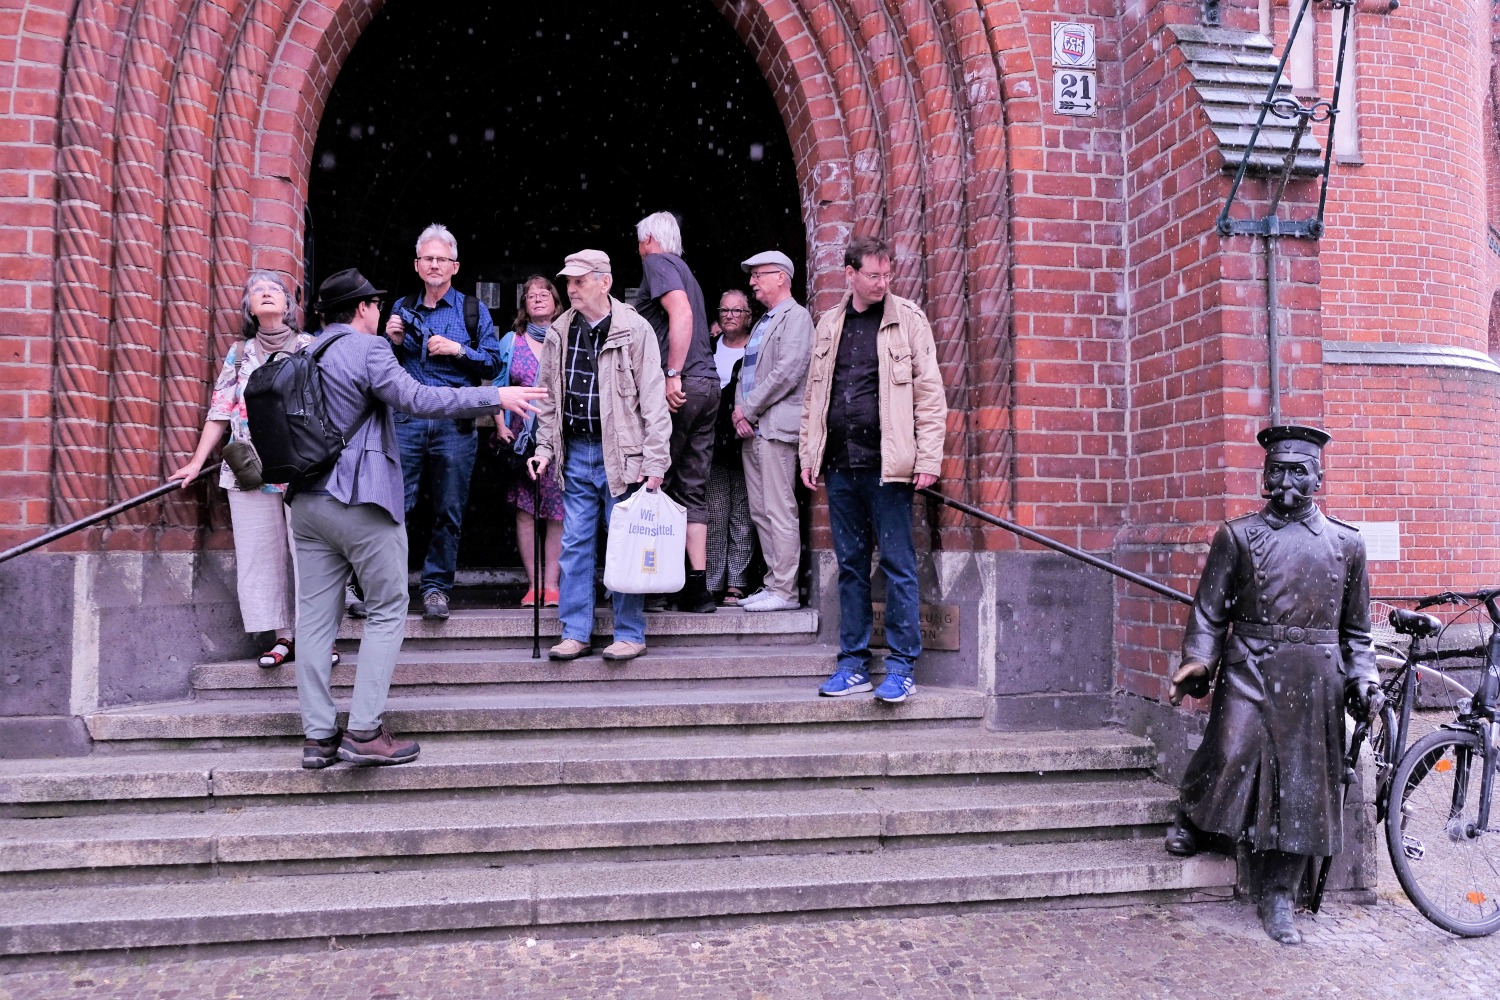 Die Spazierganggruppe am Eingang des Rathauses mit dem metallenen Hauptmann von Köpenick